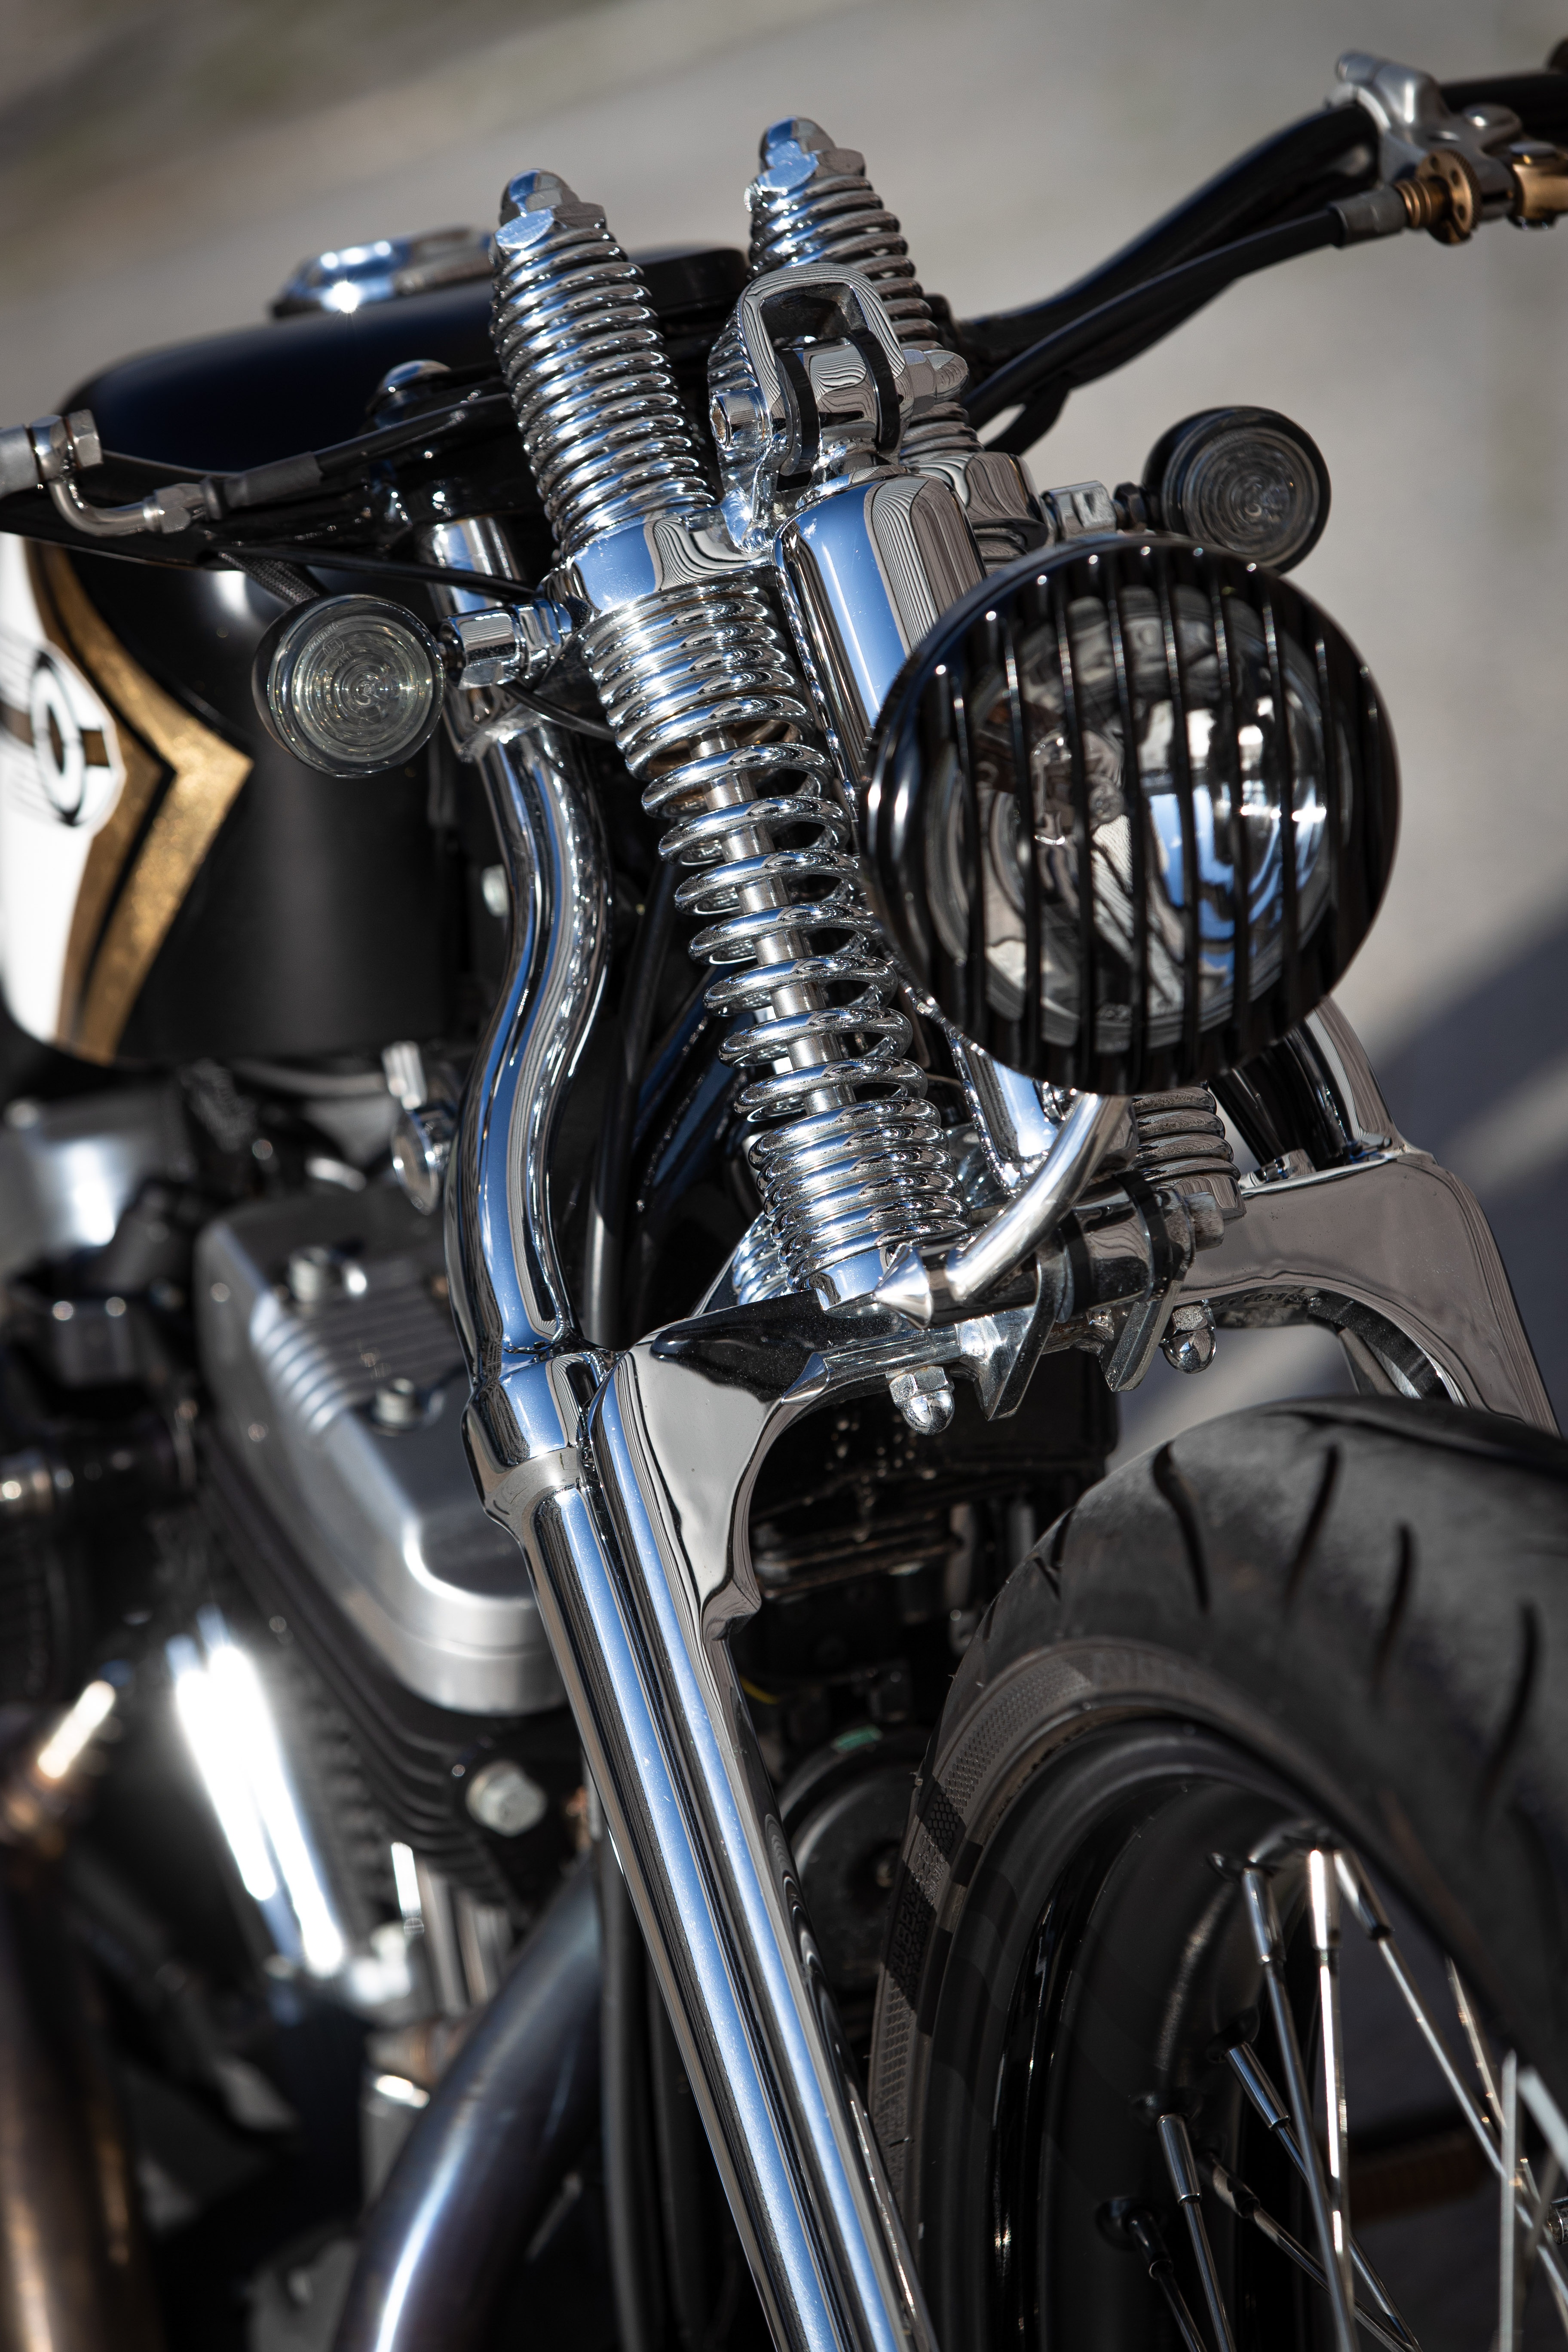 Ngam dan xe Harley-Davidson Sportster lot xac voi ban do Sykes hinh anh 22 2020_Harley_Davidson_Sportster_Custom_5294.jpg